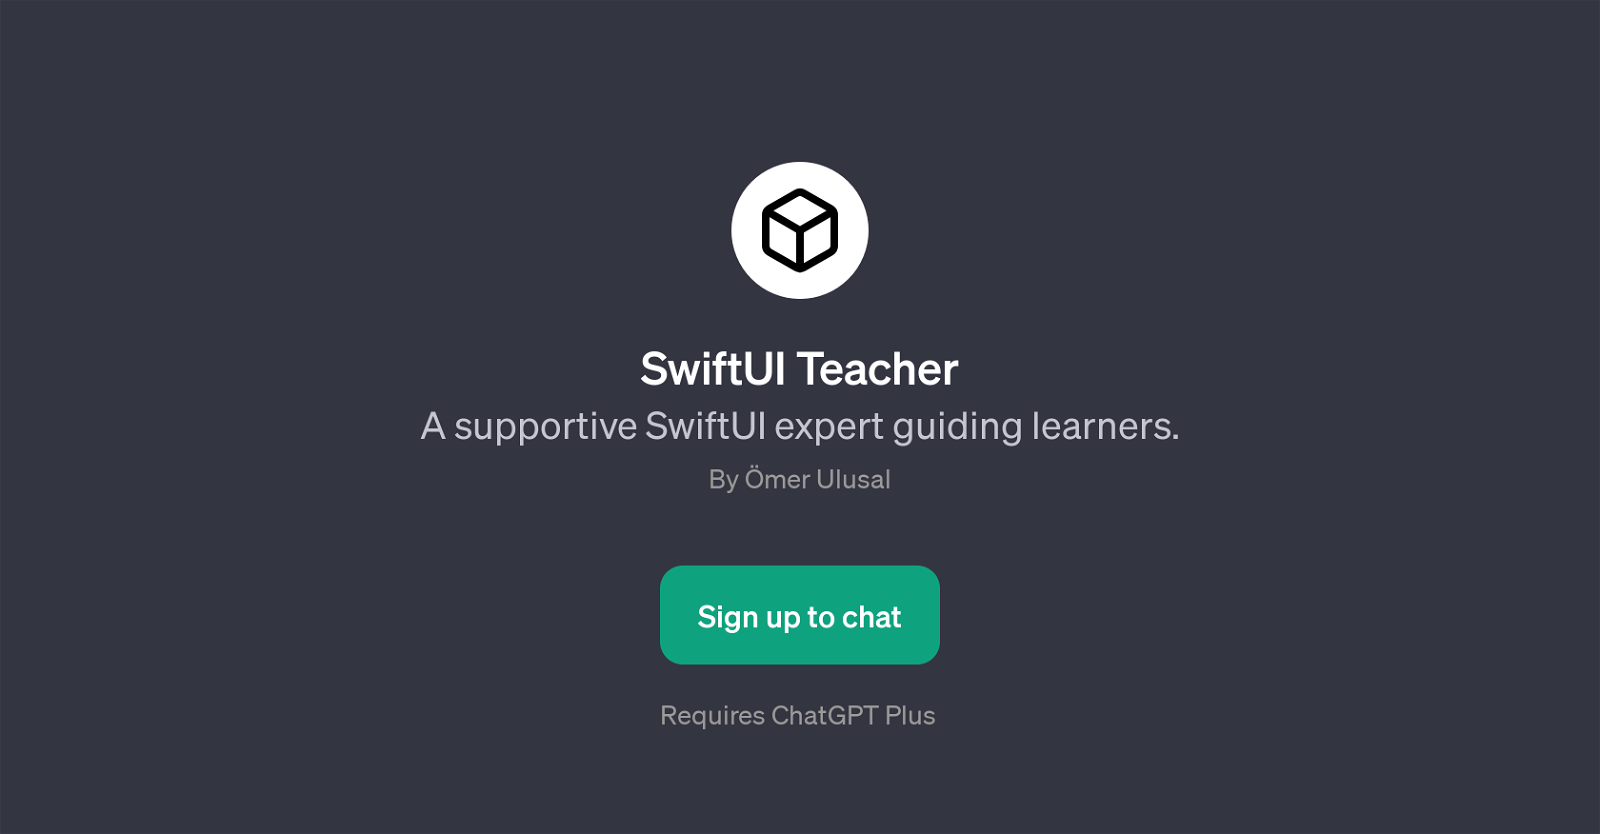 SwiftUI Teacher website